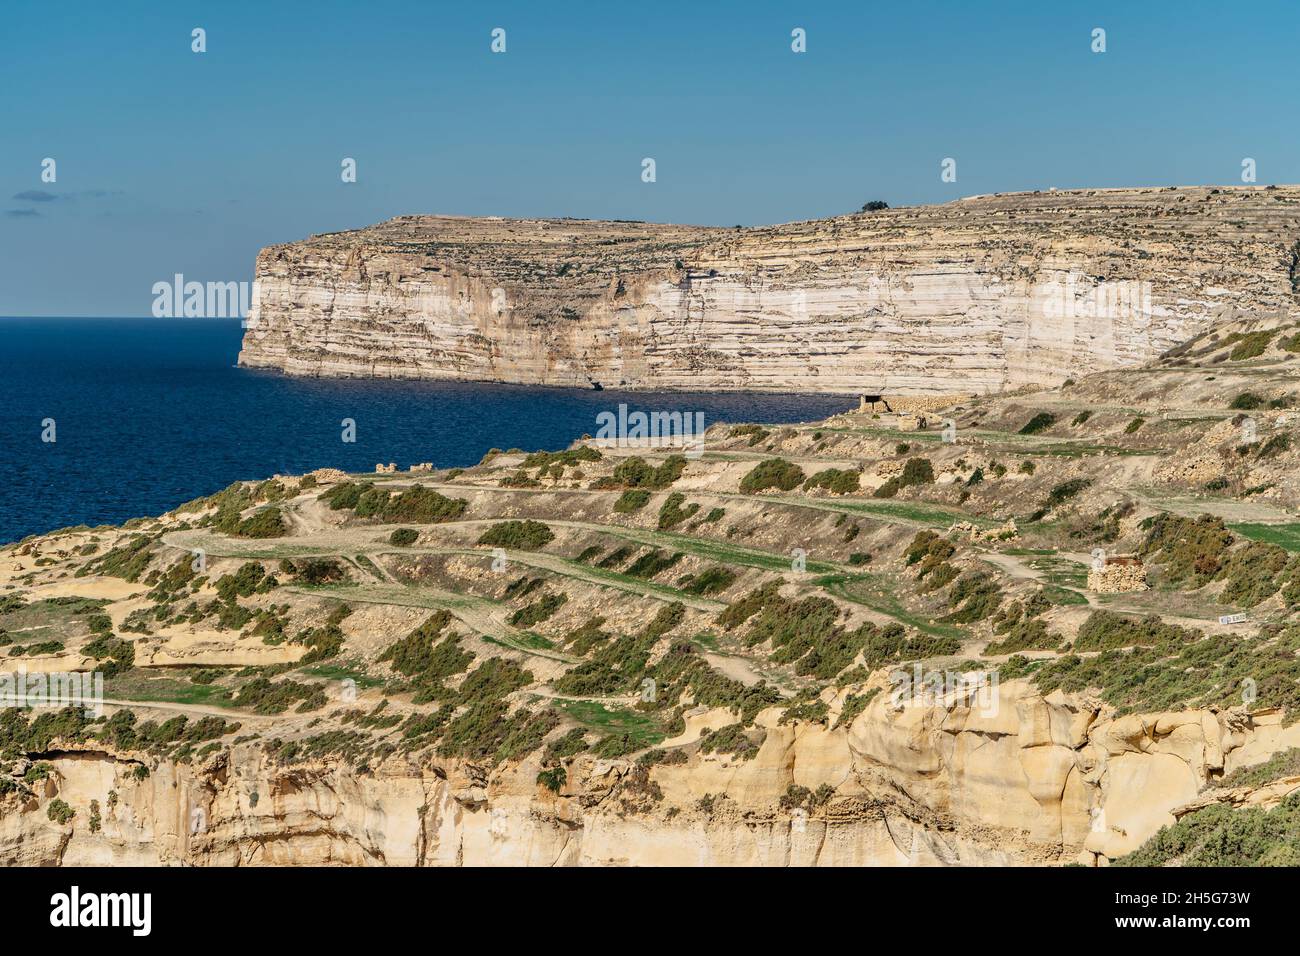 Felsige Kalksteinküste der Insel Gozo und Mittelmeer mit türkisblauem Wasser und Höhlen. Grüne terrassenförmige Felder, Hügel. Beliebte Wanderklippen Stockfoto